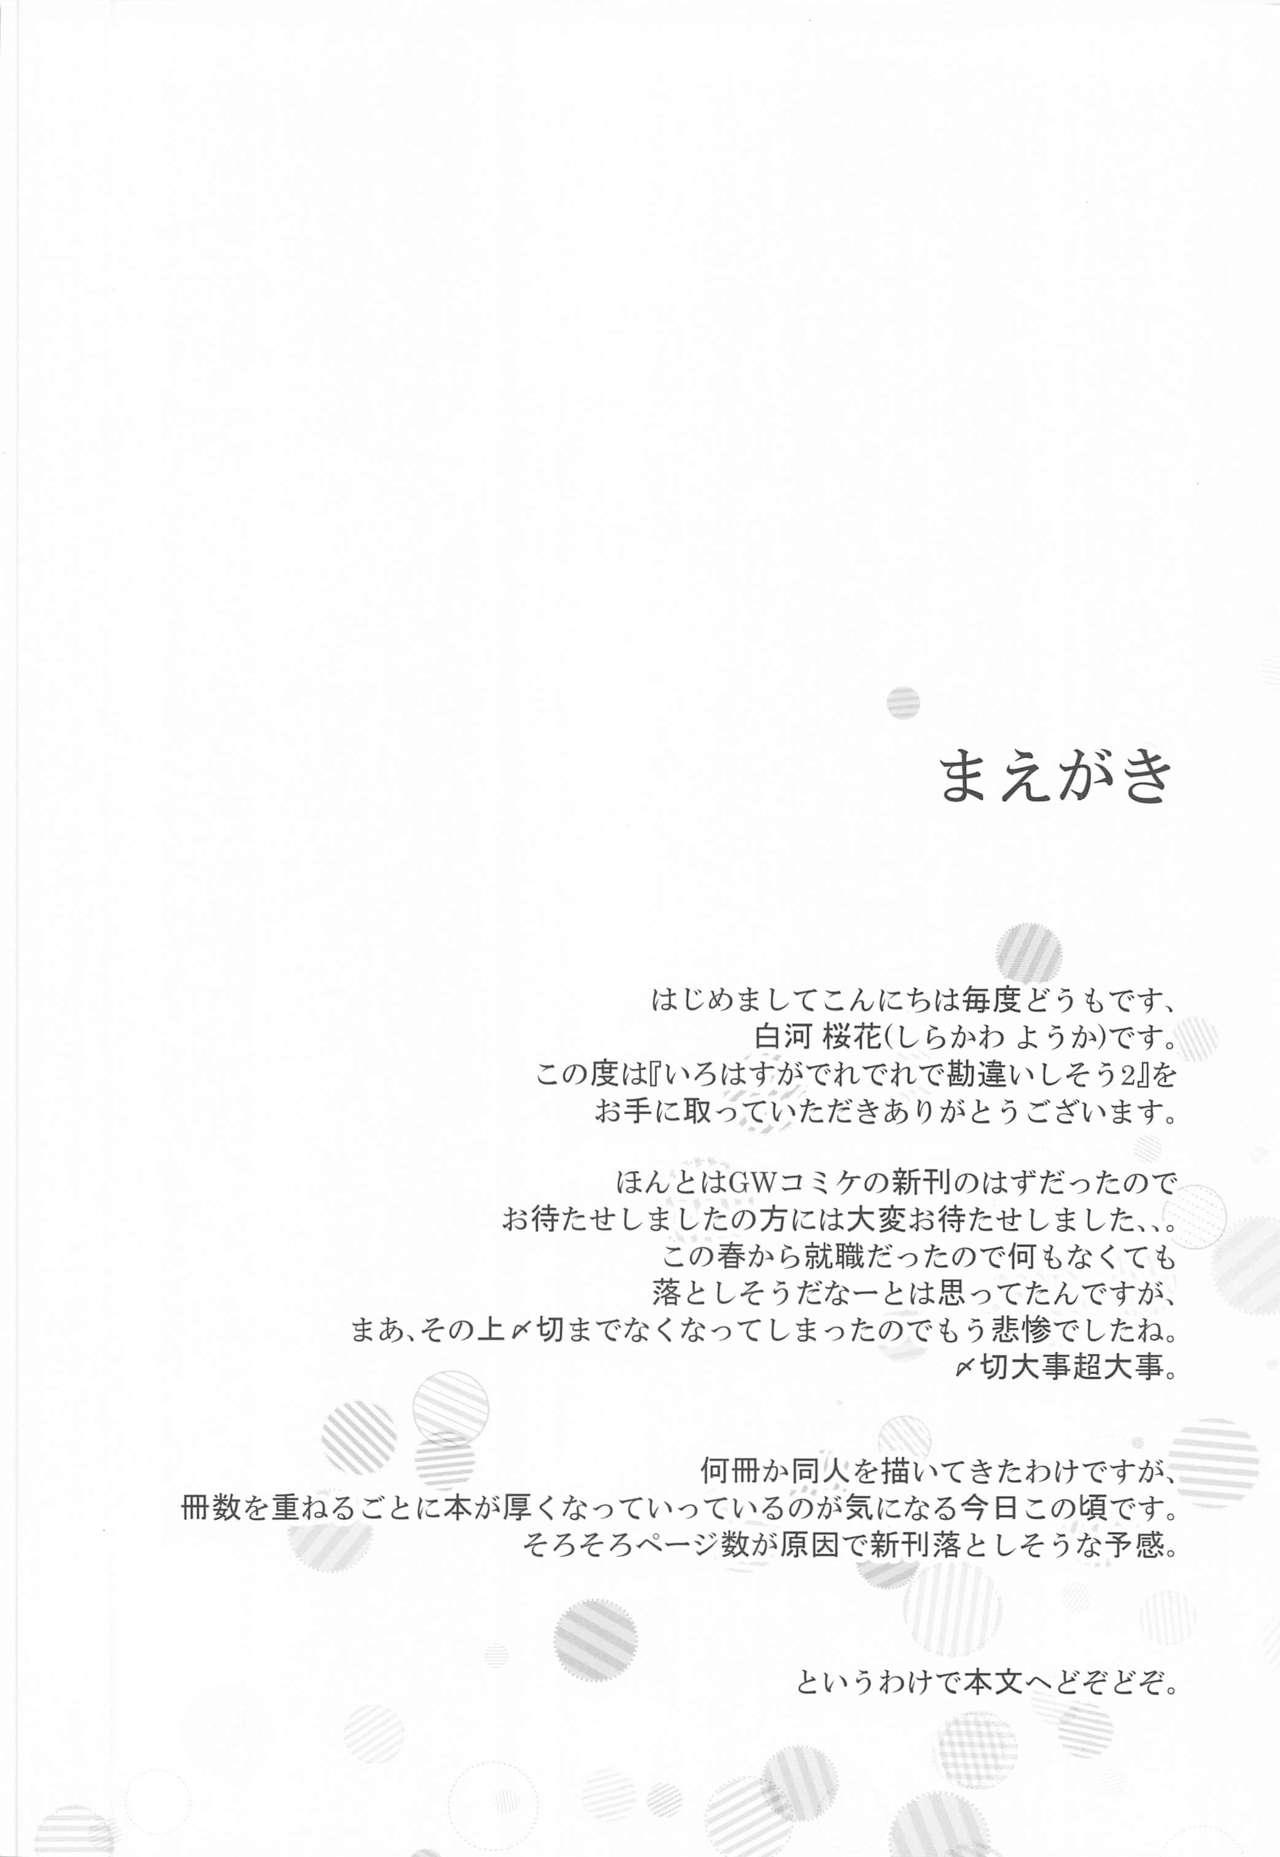 Special Locations Irohasu ga Deredere de Kanchigai Shisou 2 - Yahari ore no seishun love come wa machigatteiru Blowing - Page 3